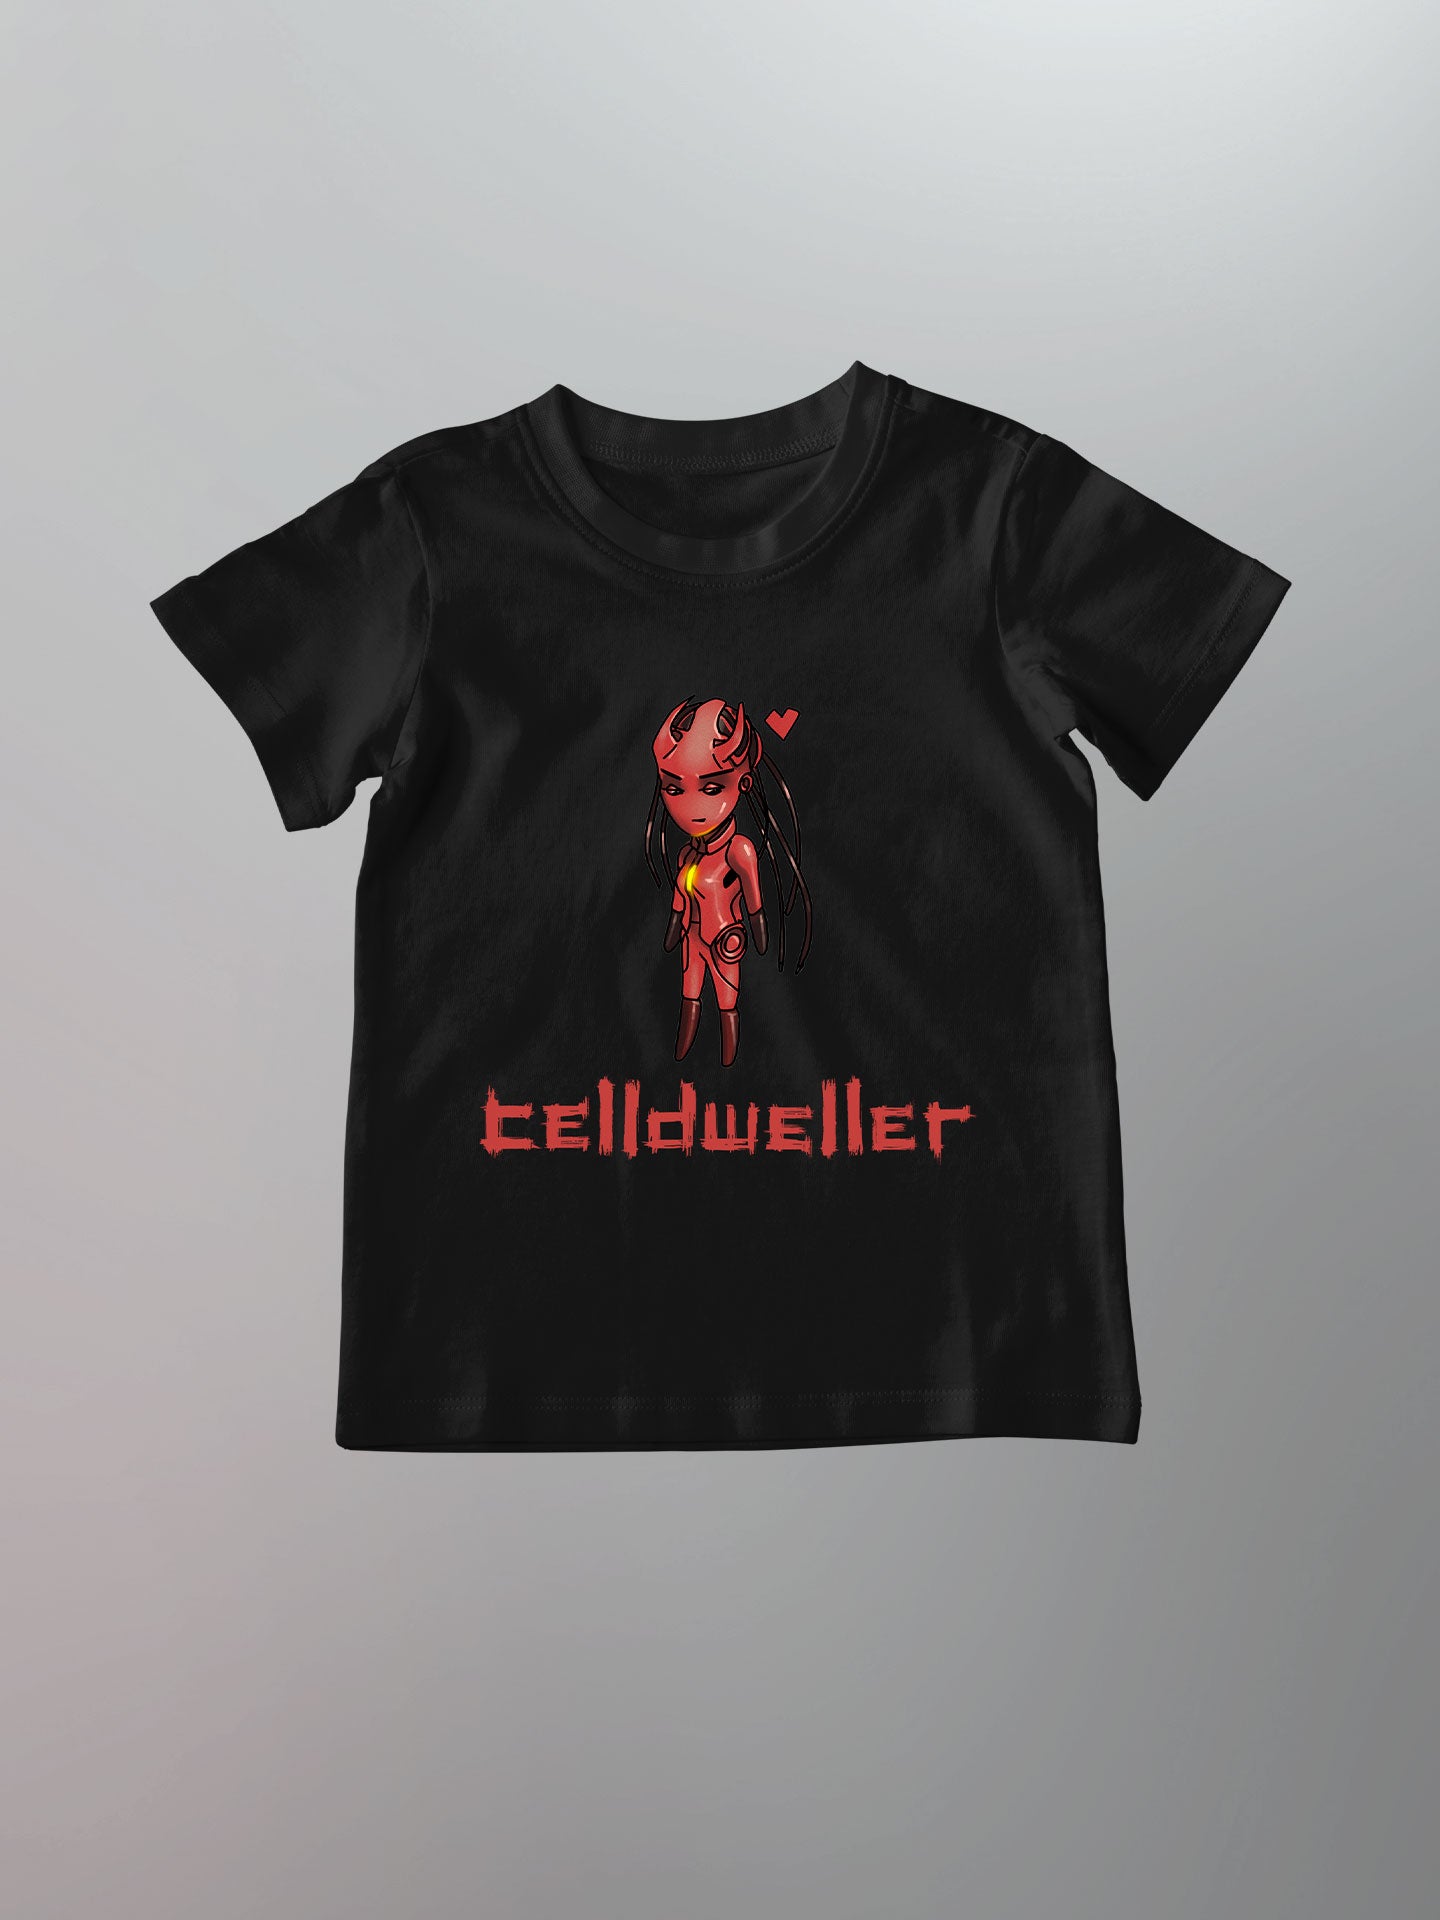 Celldweller - Siren Chibi Shirt [Toddler/Youth]